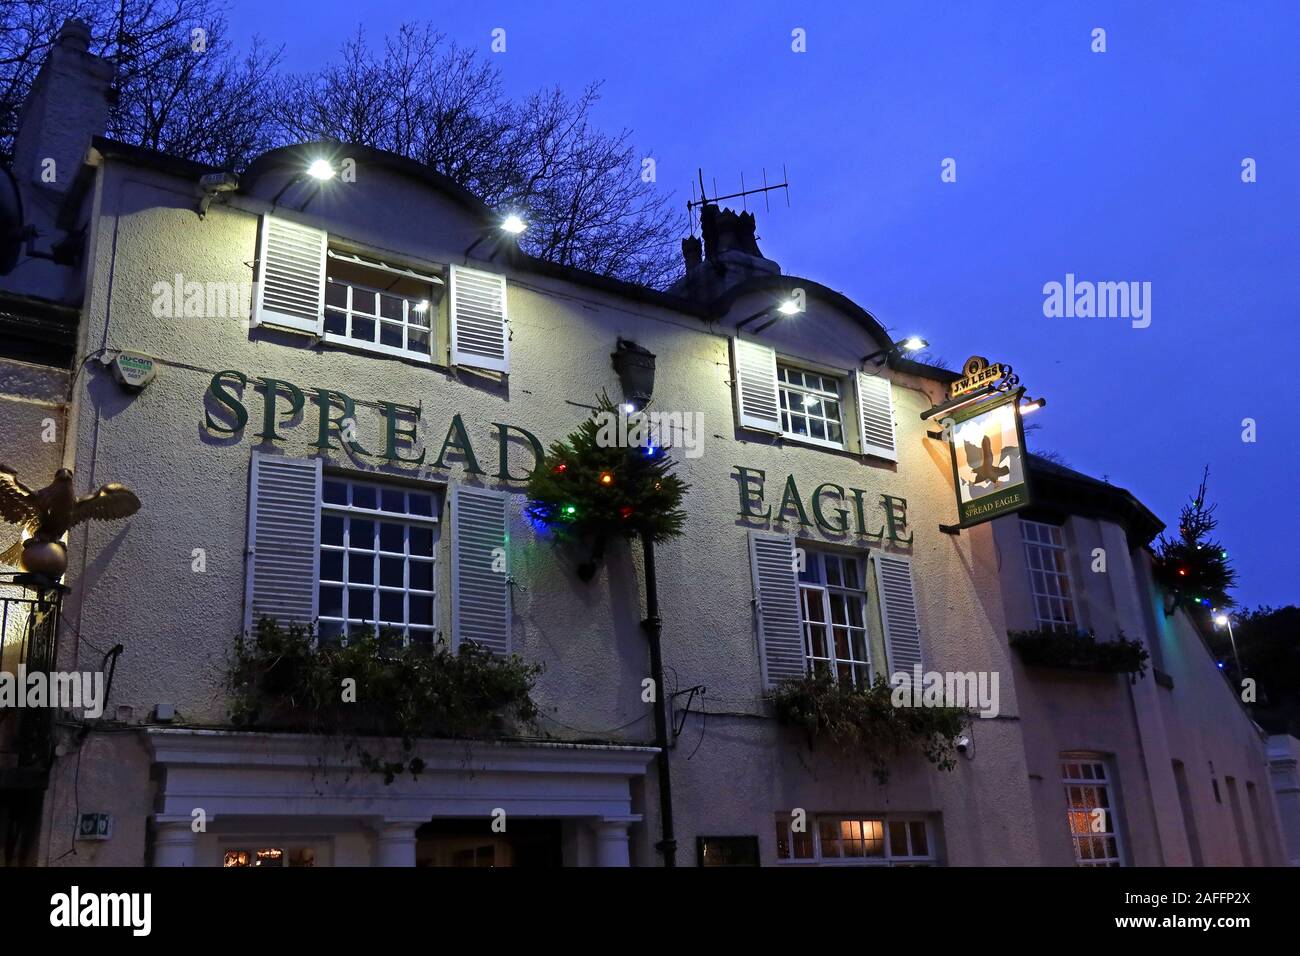 EPARLOULE pub, 47 Eagle Brow, Lymm, Warrington, Cheshire, Angleterre, Royaume-Uni, WA13 0AG, au crépuscule, en hiver Banque D'Images